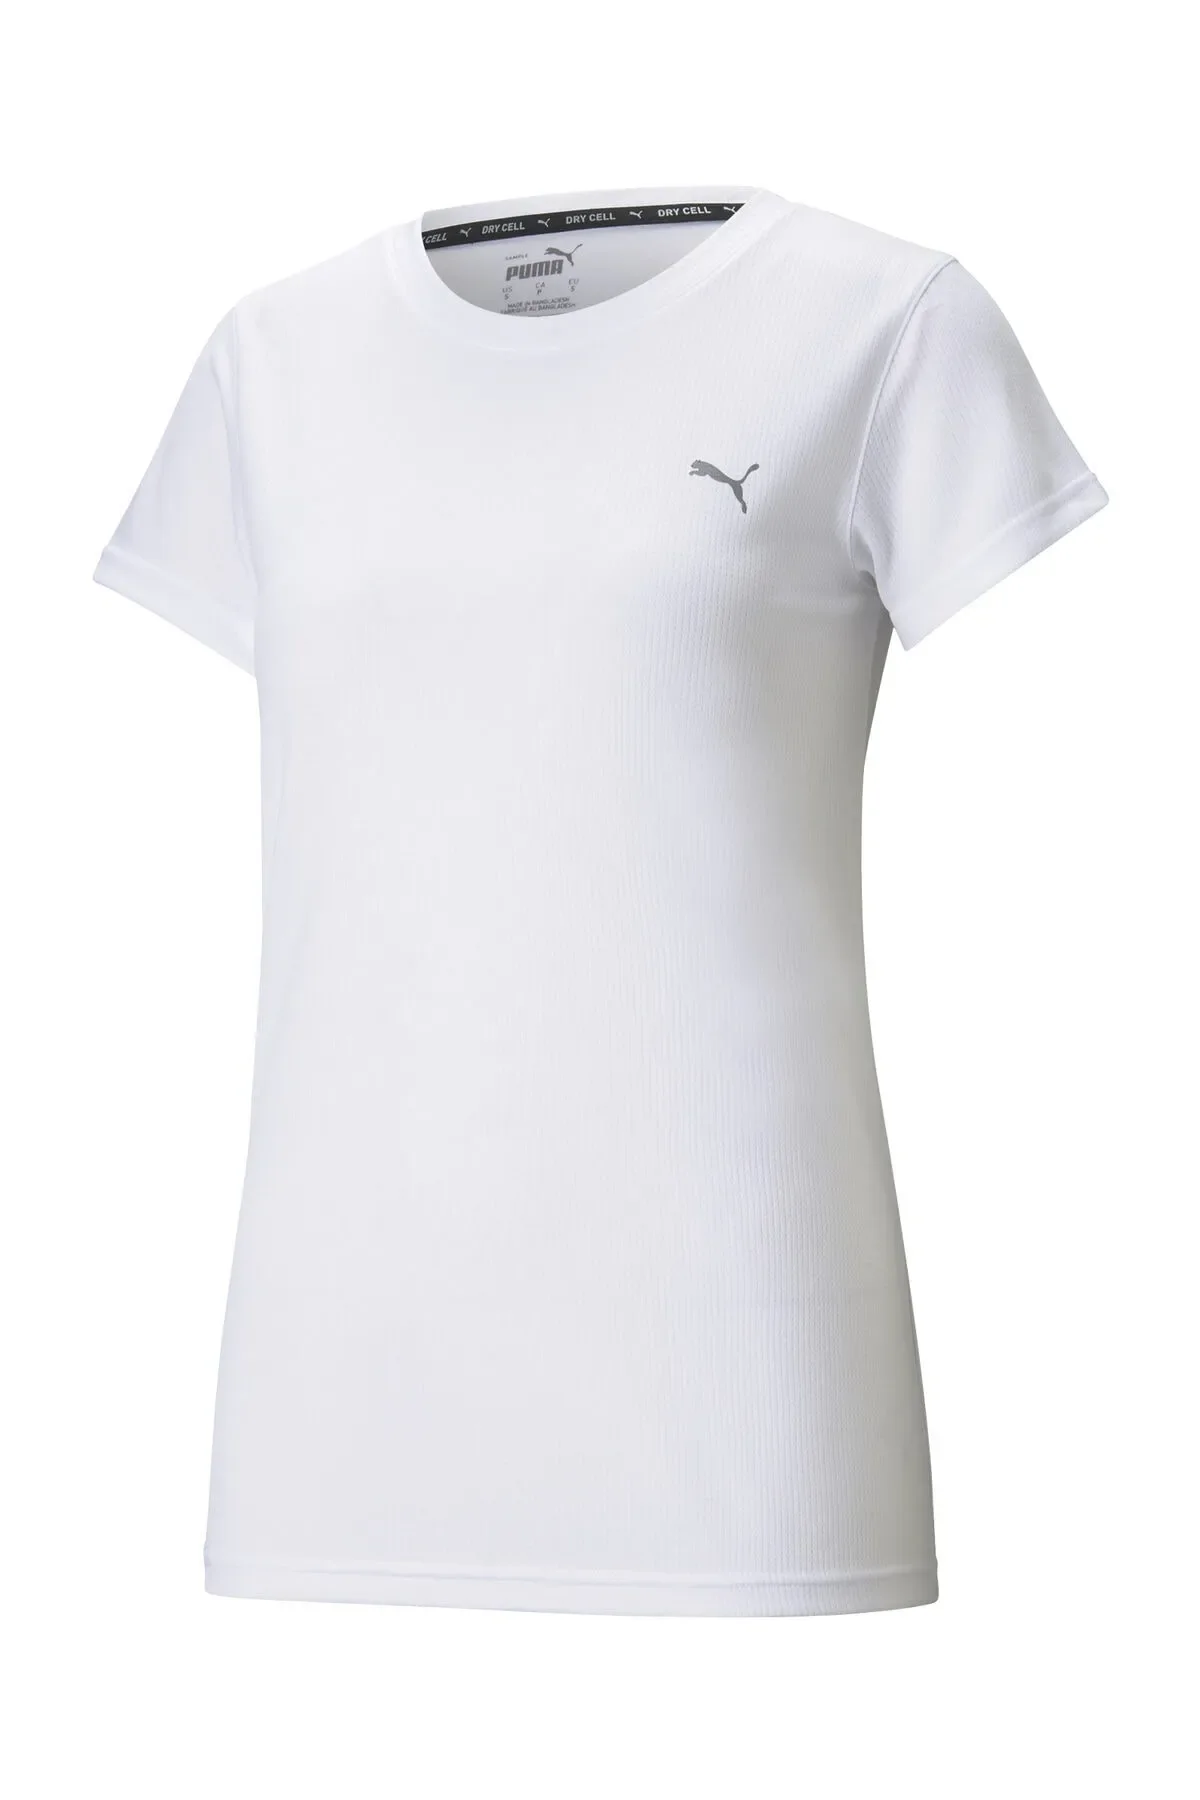 Puma Performance Kadın Antrenman Tişört 520311-Beyaz - 1